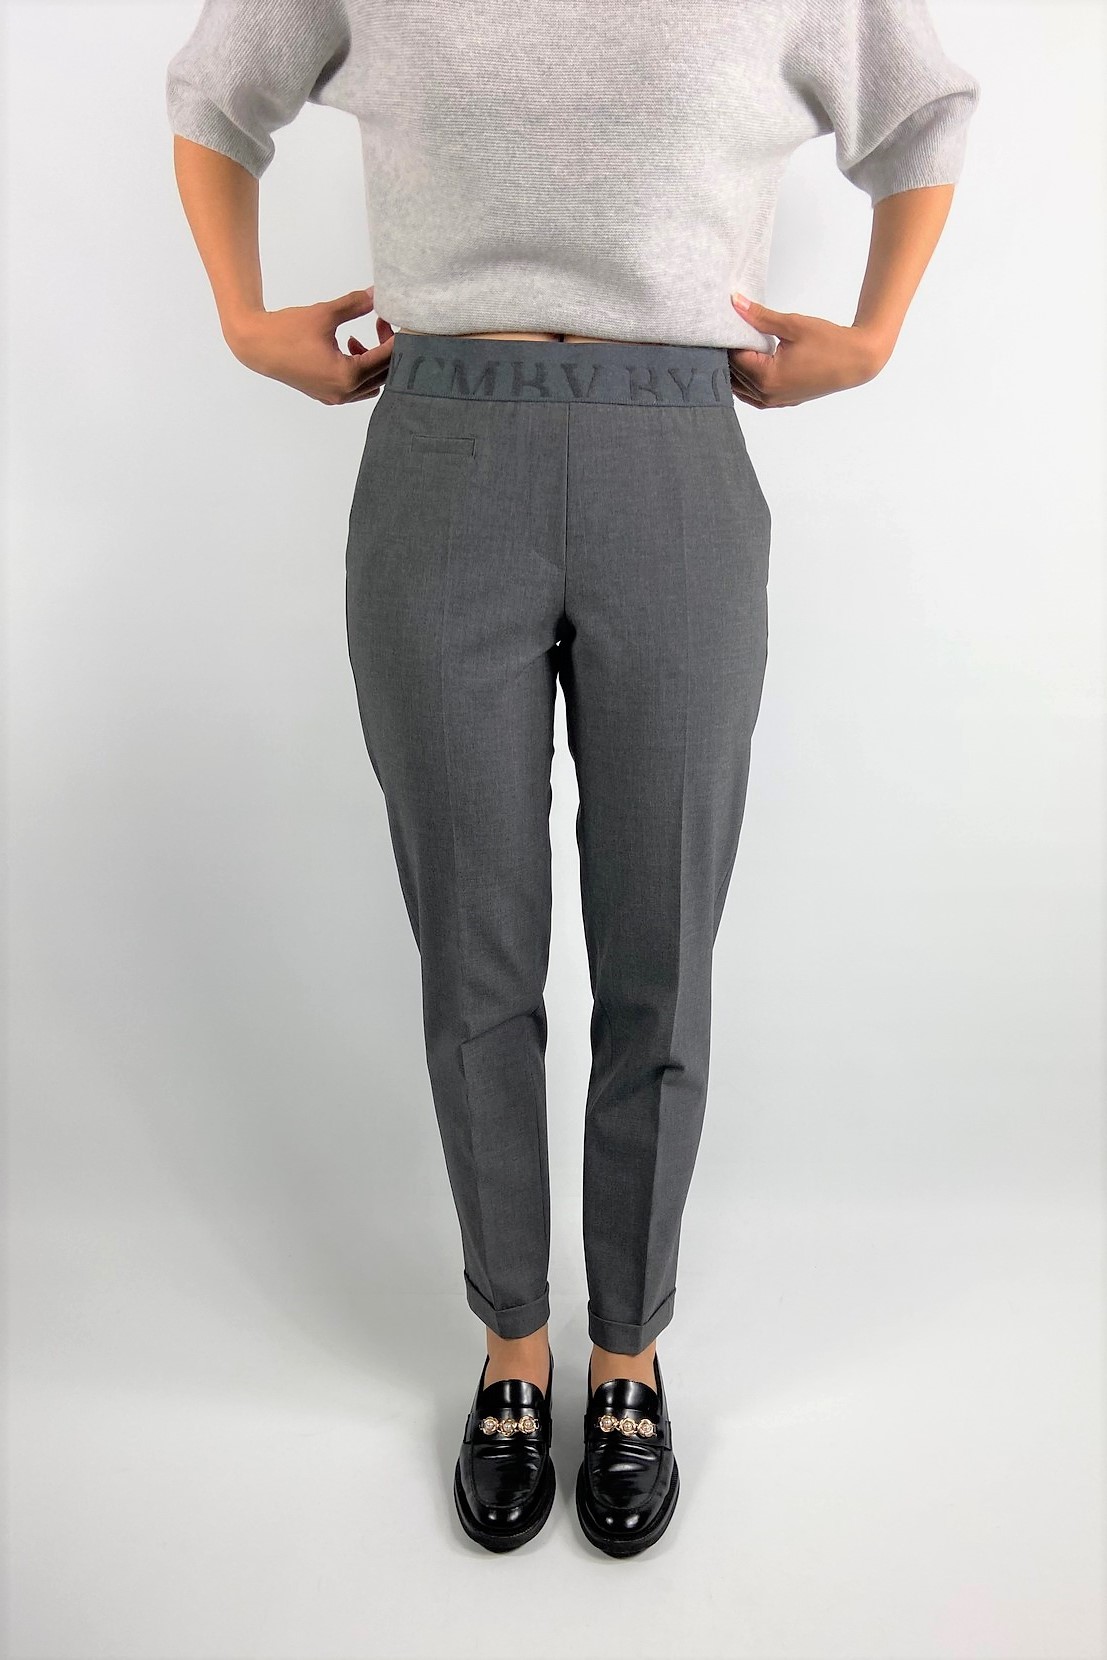 Broek sport habillé elastiek in de kleur asphalt grey van het merk Cambio